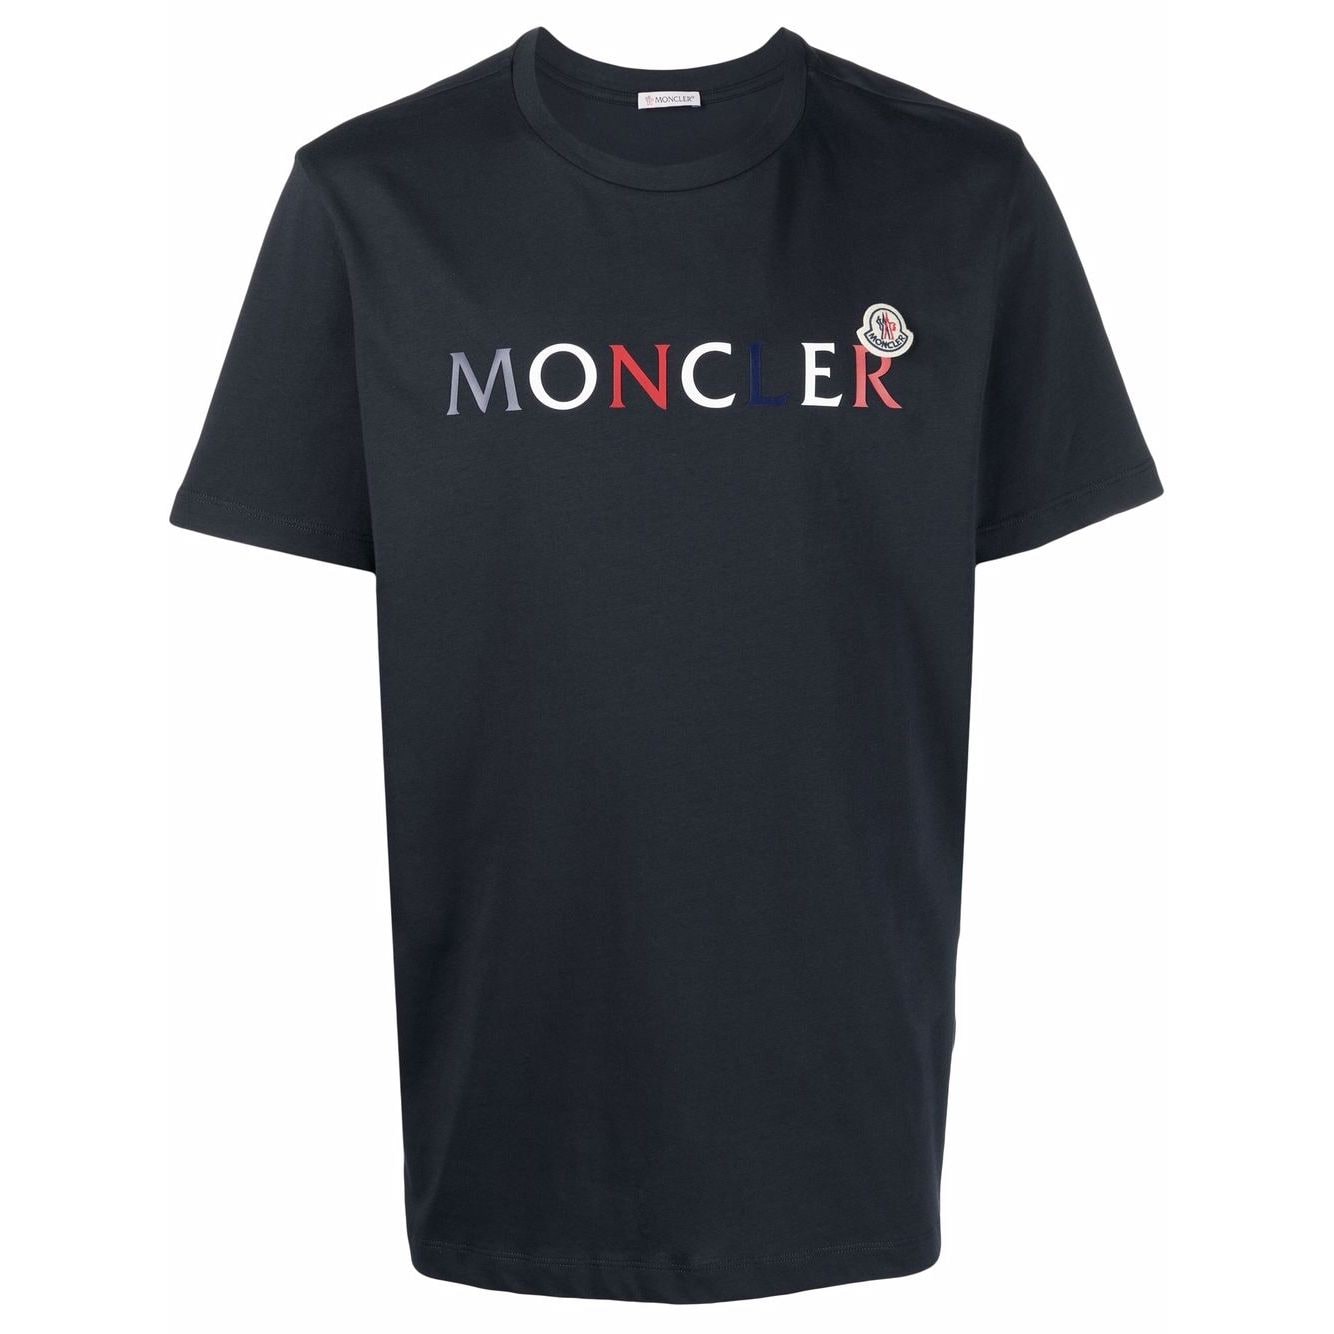 16000円は無理ですか【ほぼ新品】MONCLER 半袖Tシャツ ネイビー